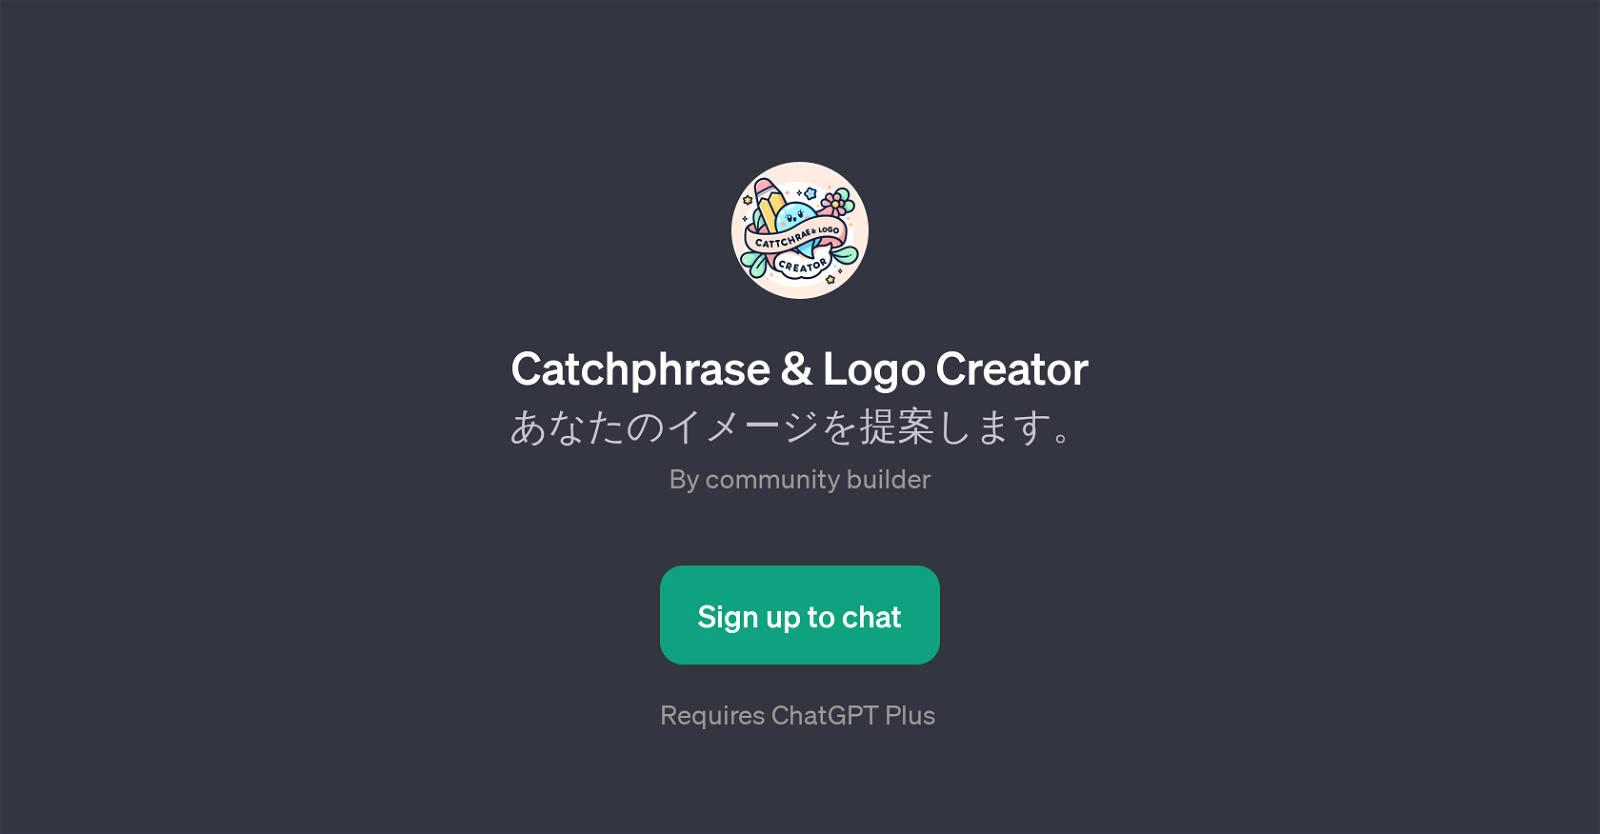 Catchphrase & Logo Creator website